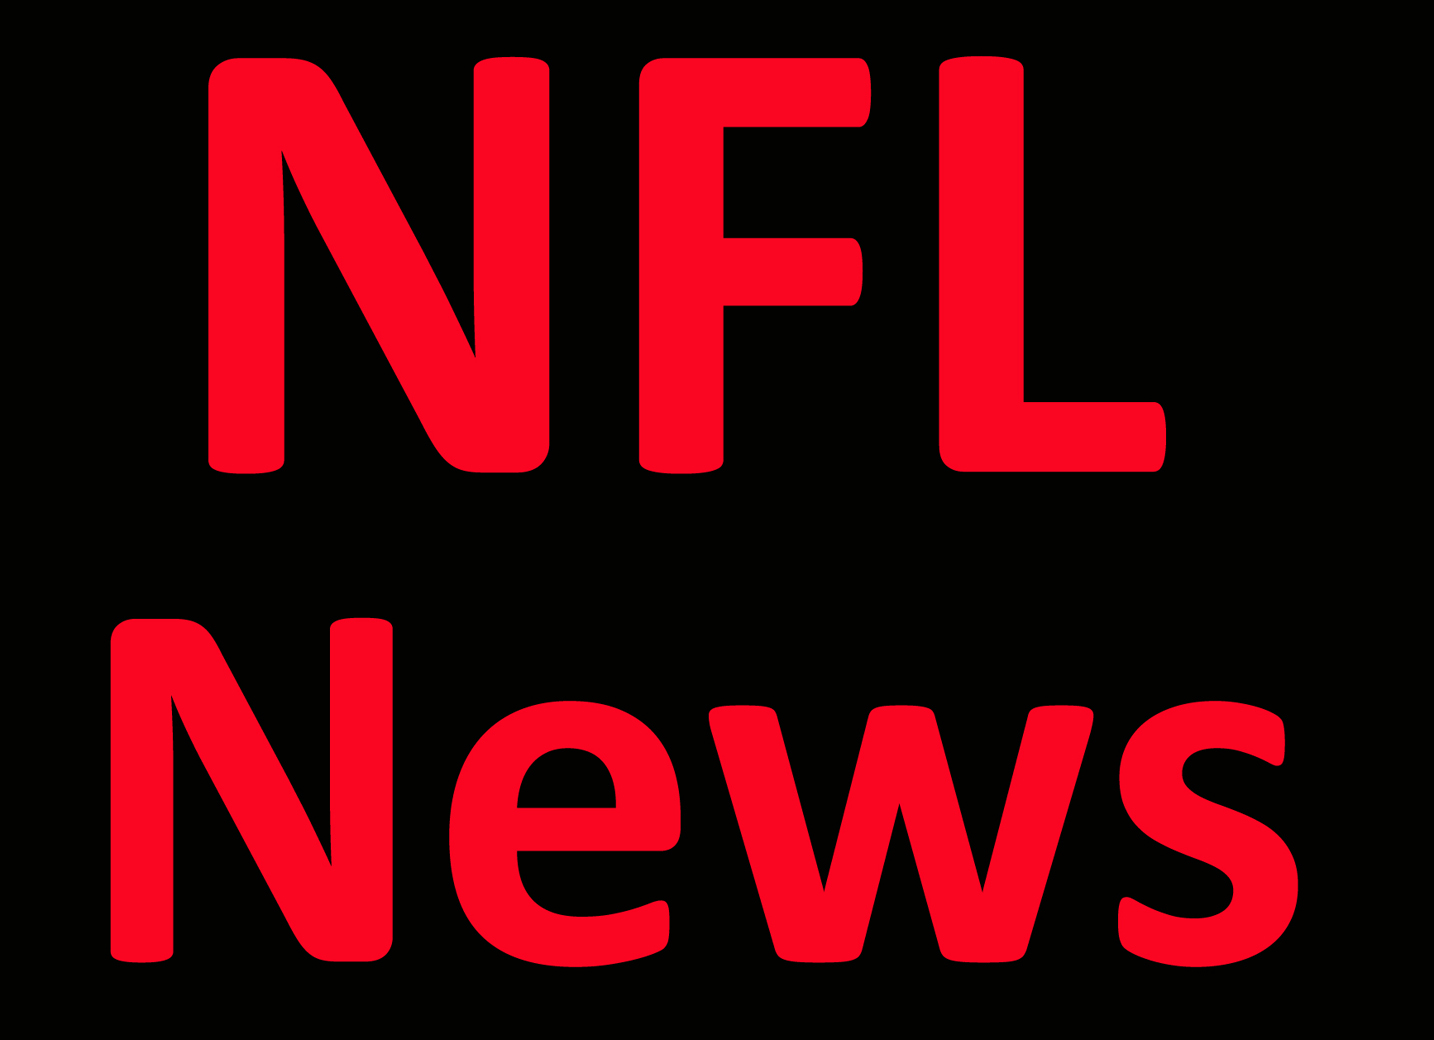 NFL News: Jets’ Saleh won’t commit to QB Wilson as starter Per Report